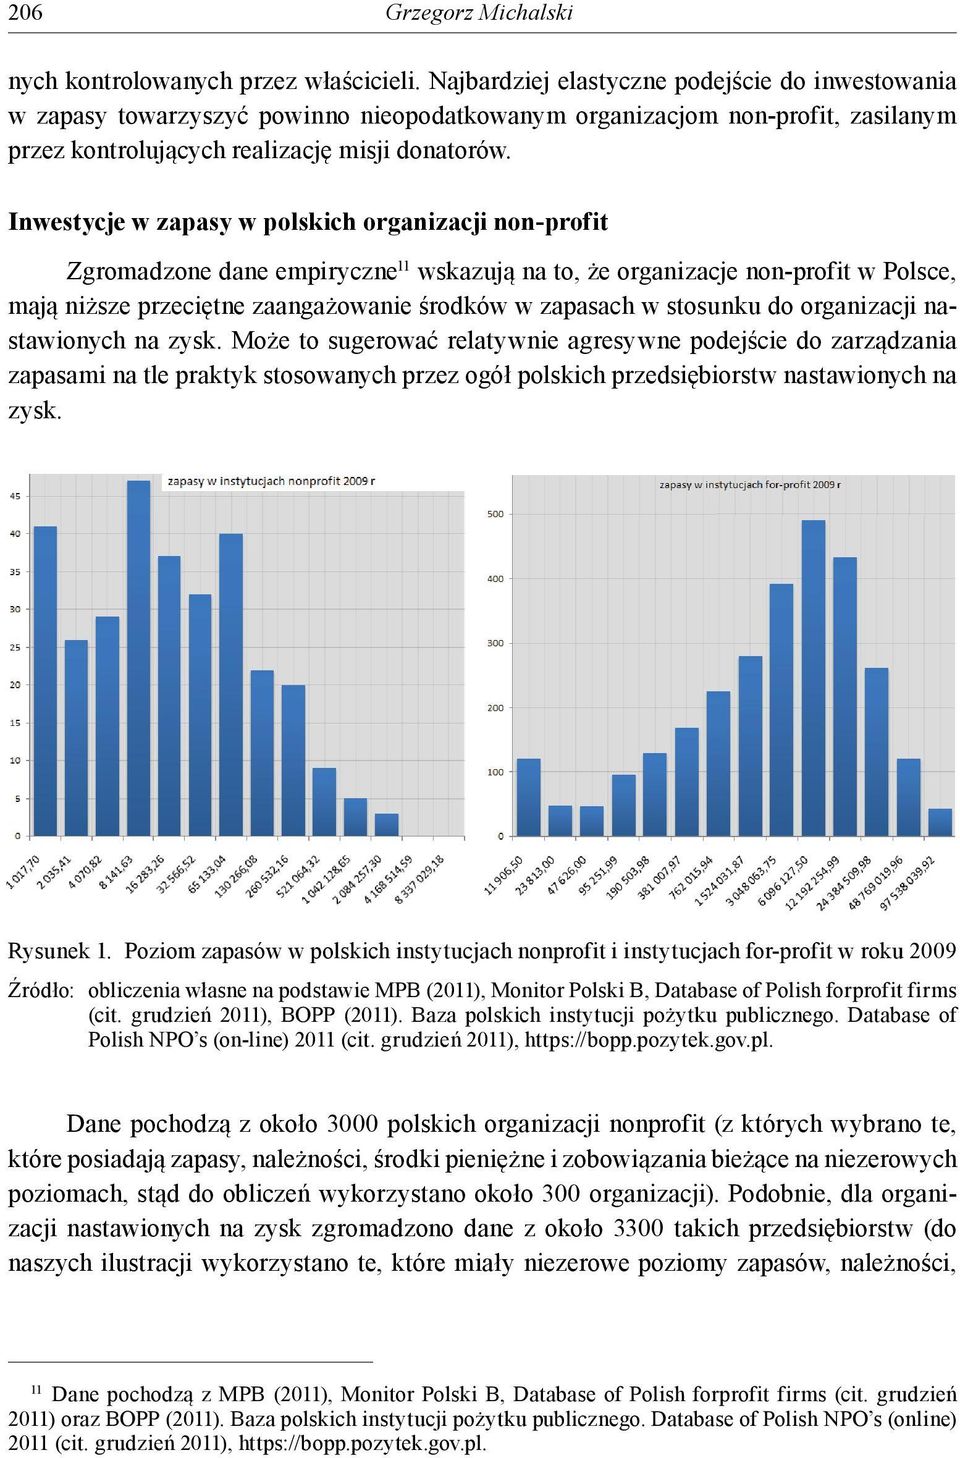 Inwesycje w zapasy w polskich organizacji non-profi Zgromadzone dane empiryczne 11 wskazują na o, że organizacje non-profi w Polsce, mają niższe przecięne zaangażowanie środków w zapasach w sosunku